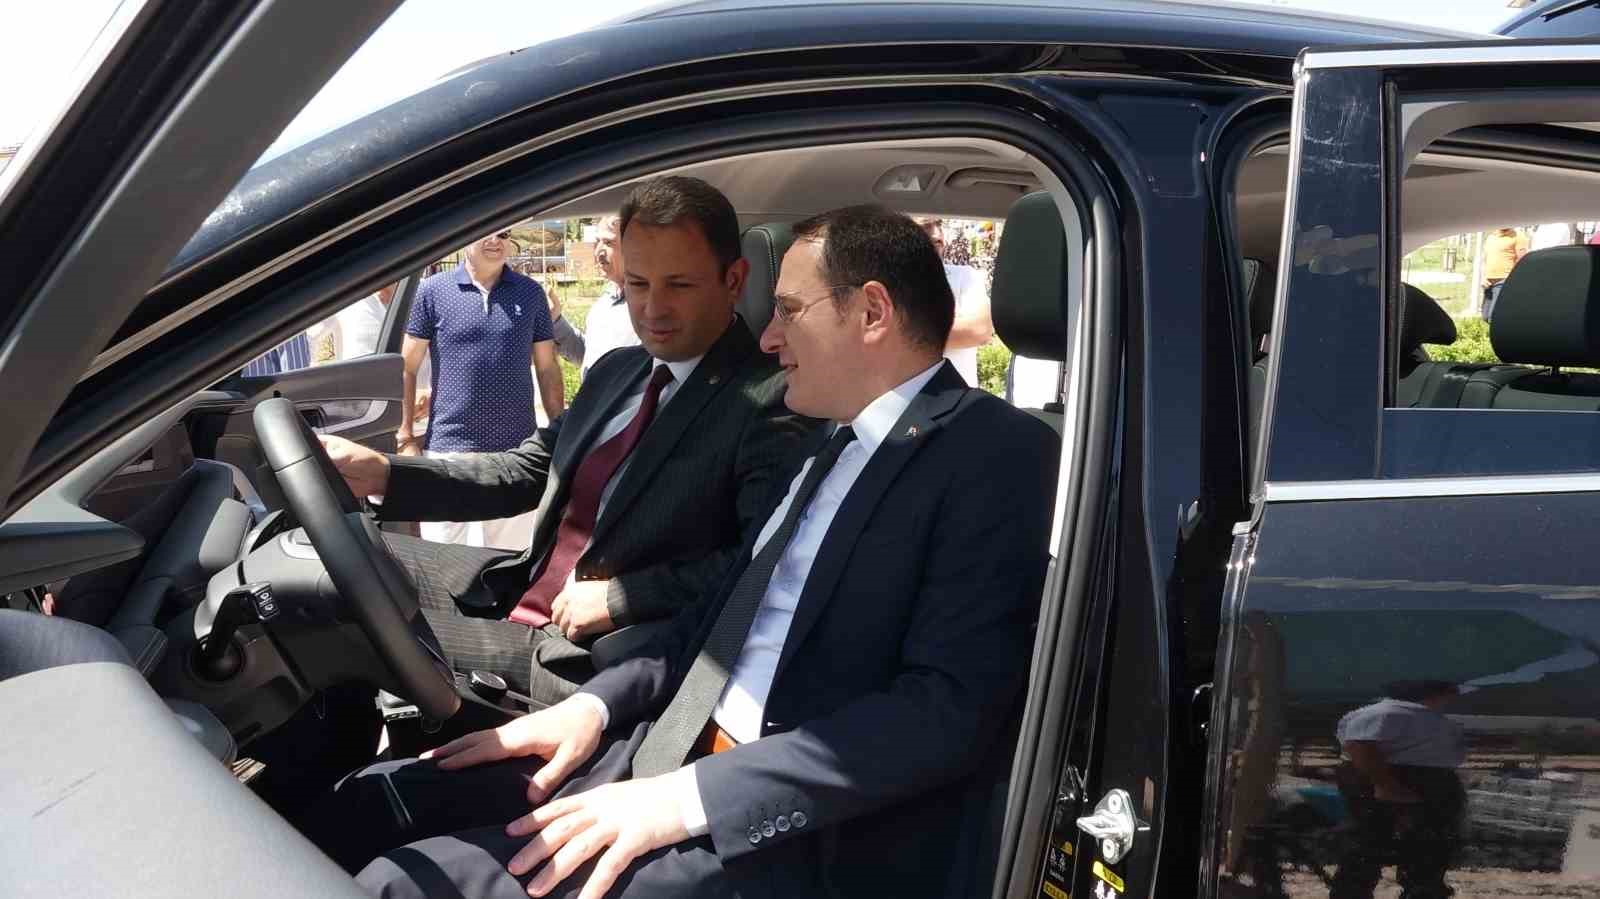 İl olmaya aday Erciş’te Türkiye’nin yerli otomobili TOGG tanıtıldı